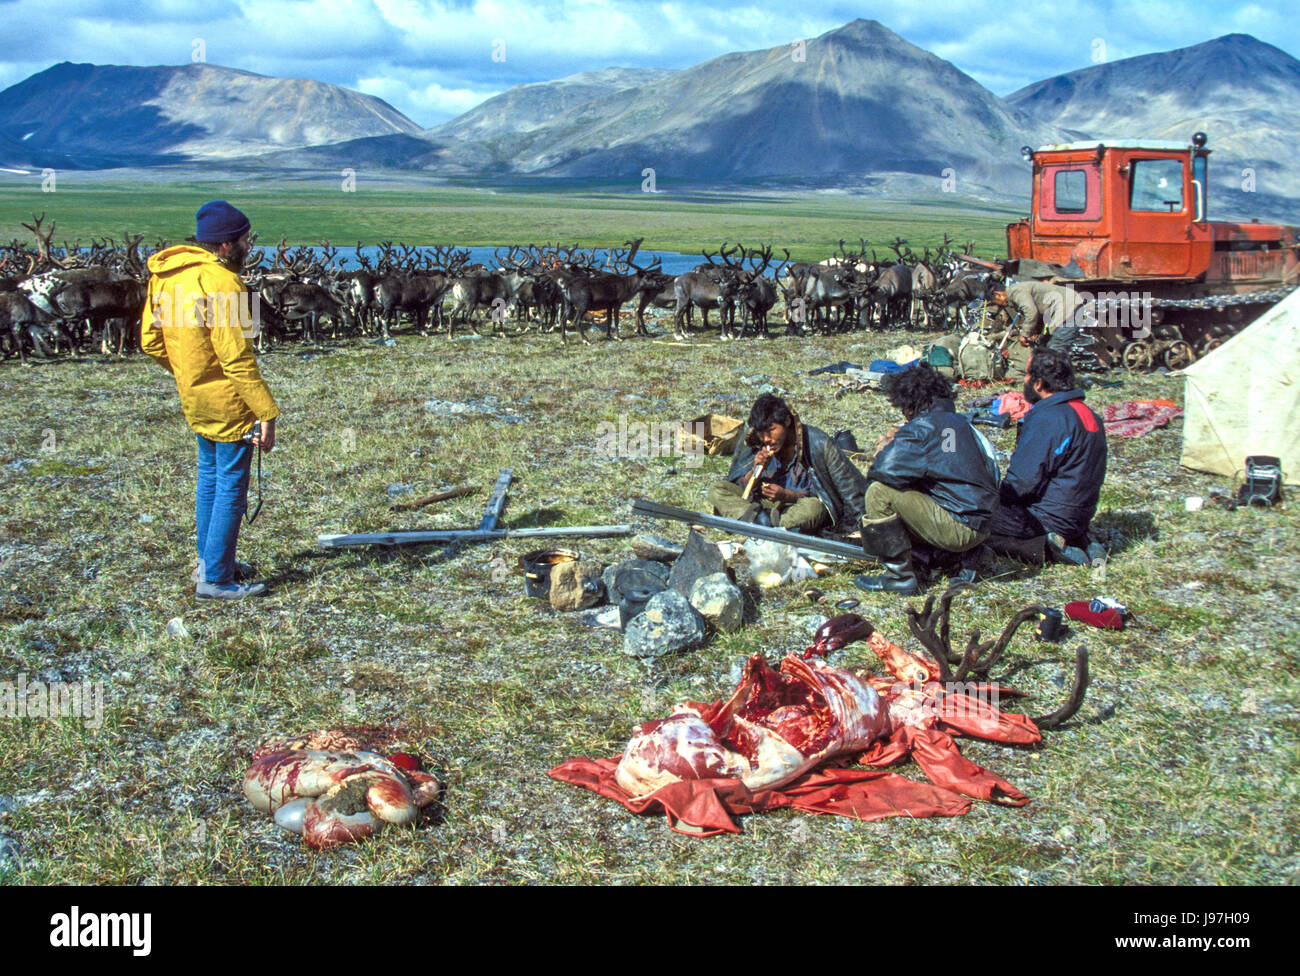 Ein Rentier für die Gäste eine nomadische Tschuktschen Rentierzüchter Jurte Lager auf der Tschuktschen oder Chukotka Halbinsel, in der russischen F Braten vorbereiten Stockfoto